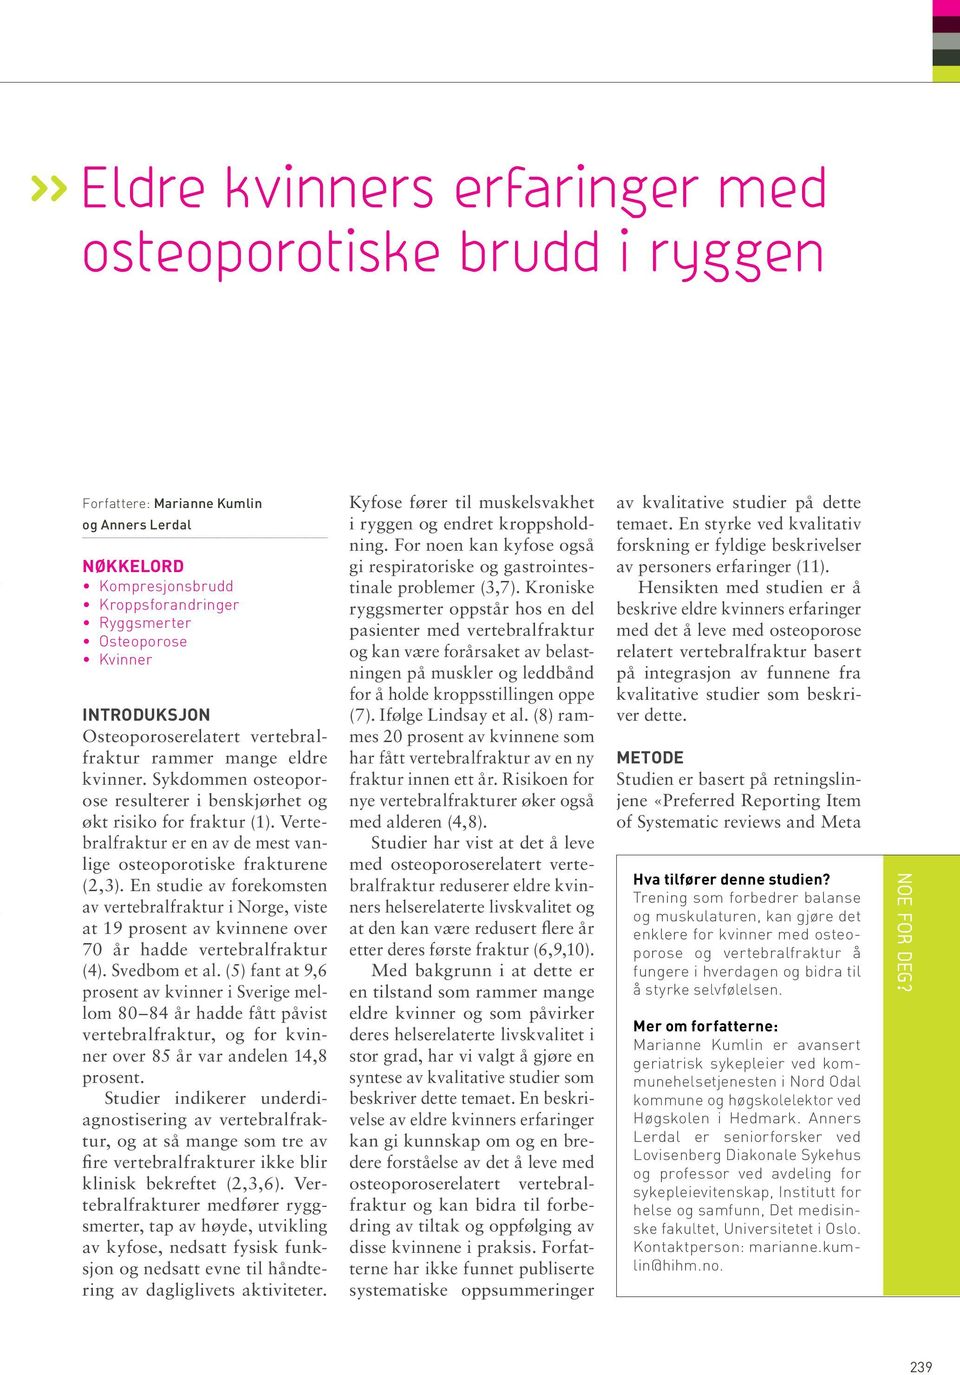 Vertebralfraktur er en av de mest vanlige osteoporotiske frakturene (2,3). En studie av forekomsten av vertebralfraktur i Norge, viste at 19 prosent av kvinnene over 70 år hadde vertebralfraktur (4).